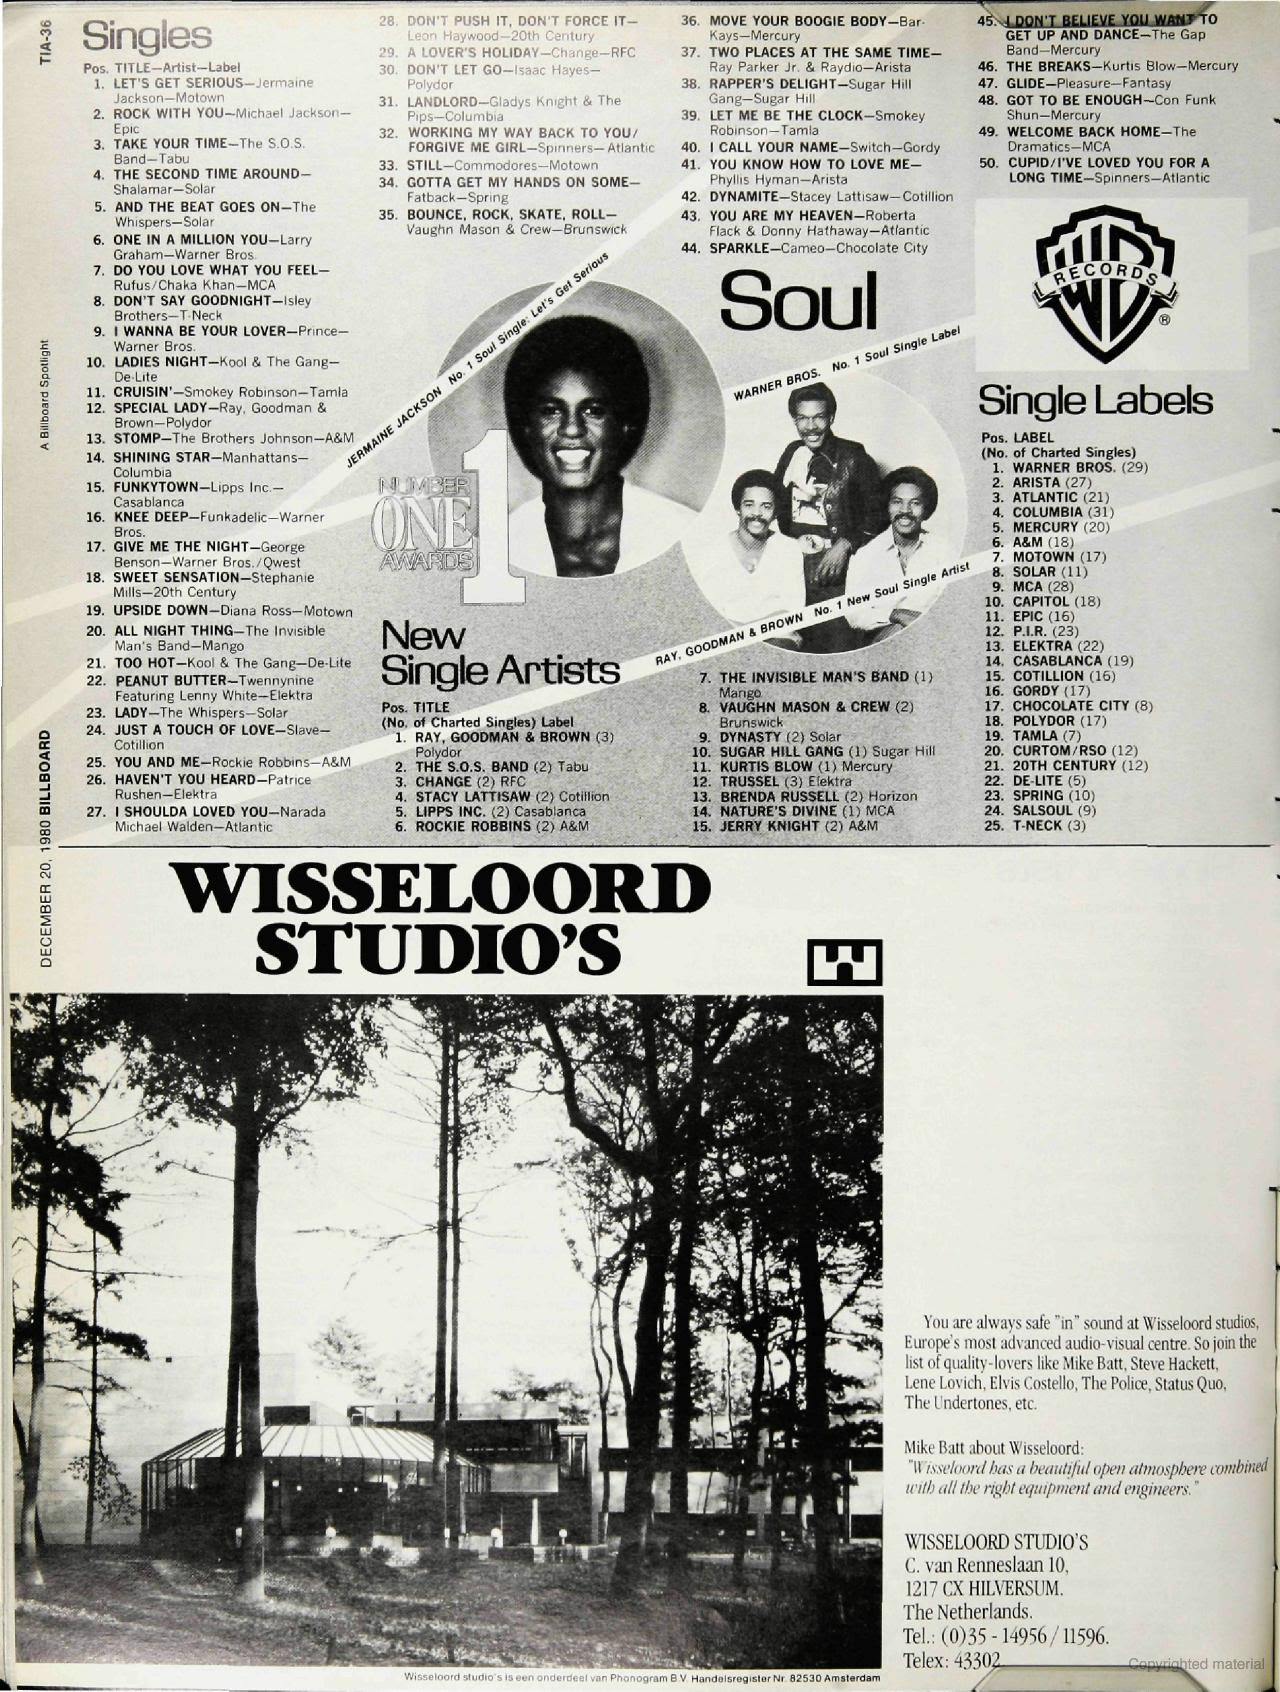 Billboard Music Charts 1980